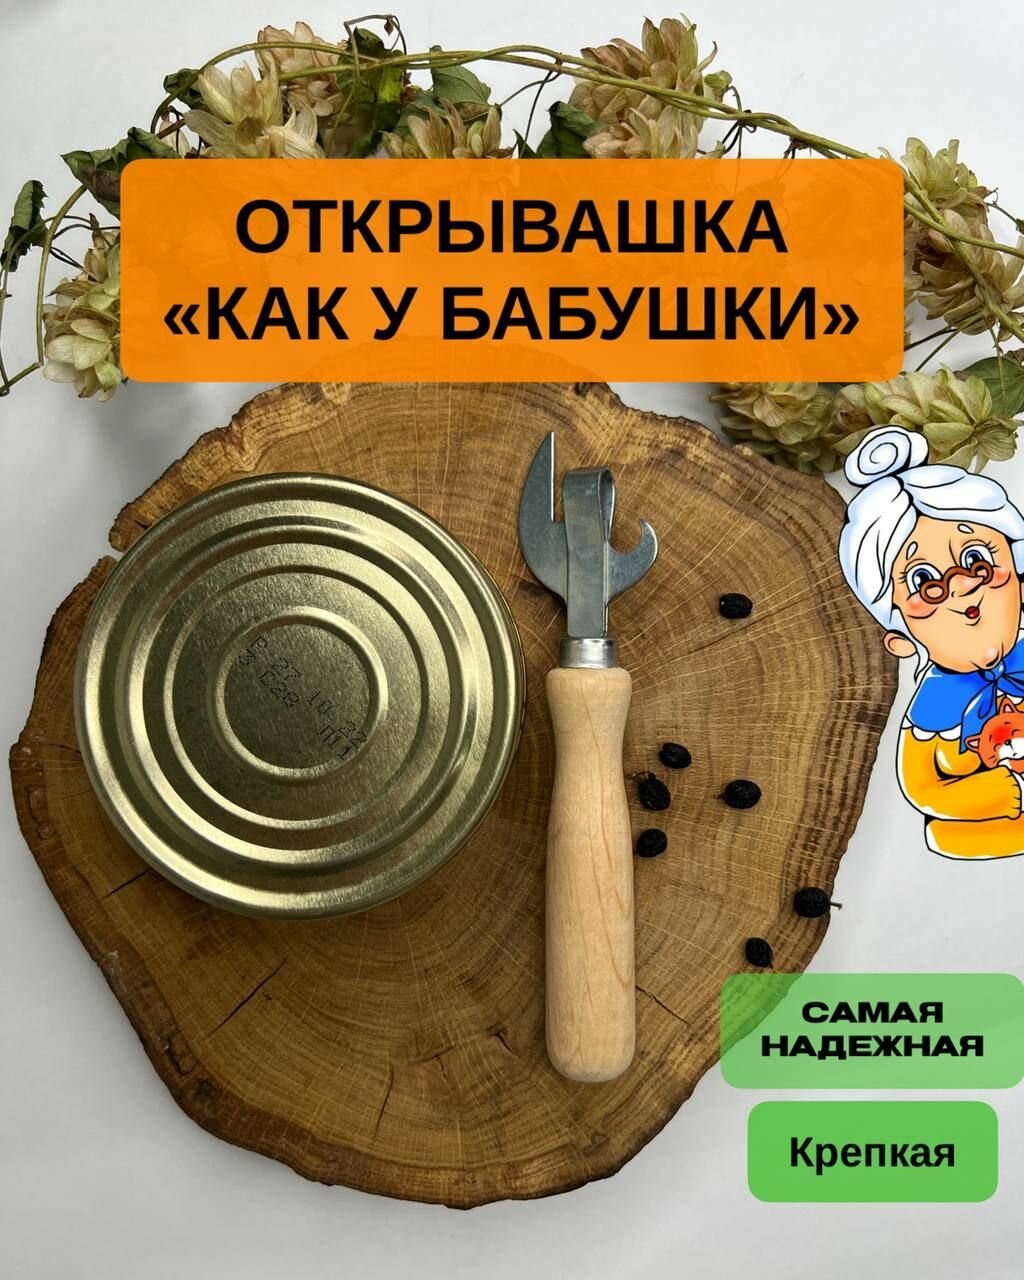 Открывашка с деревянной ручкой "Как у бабушки", нож консервный, открывалка СССР